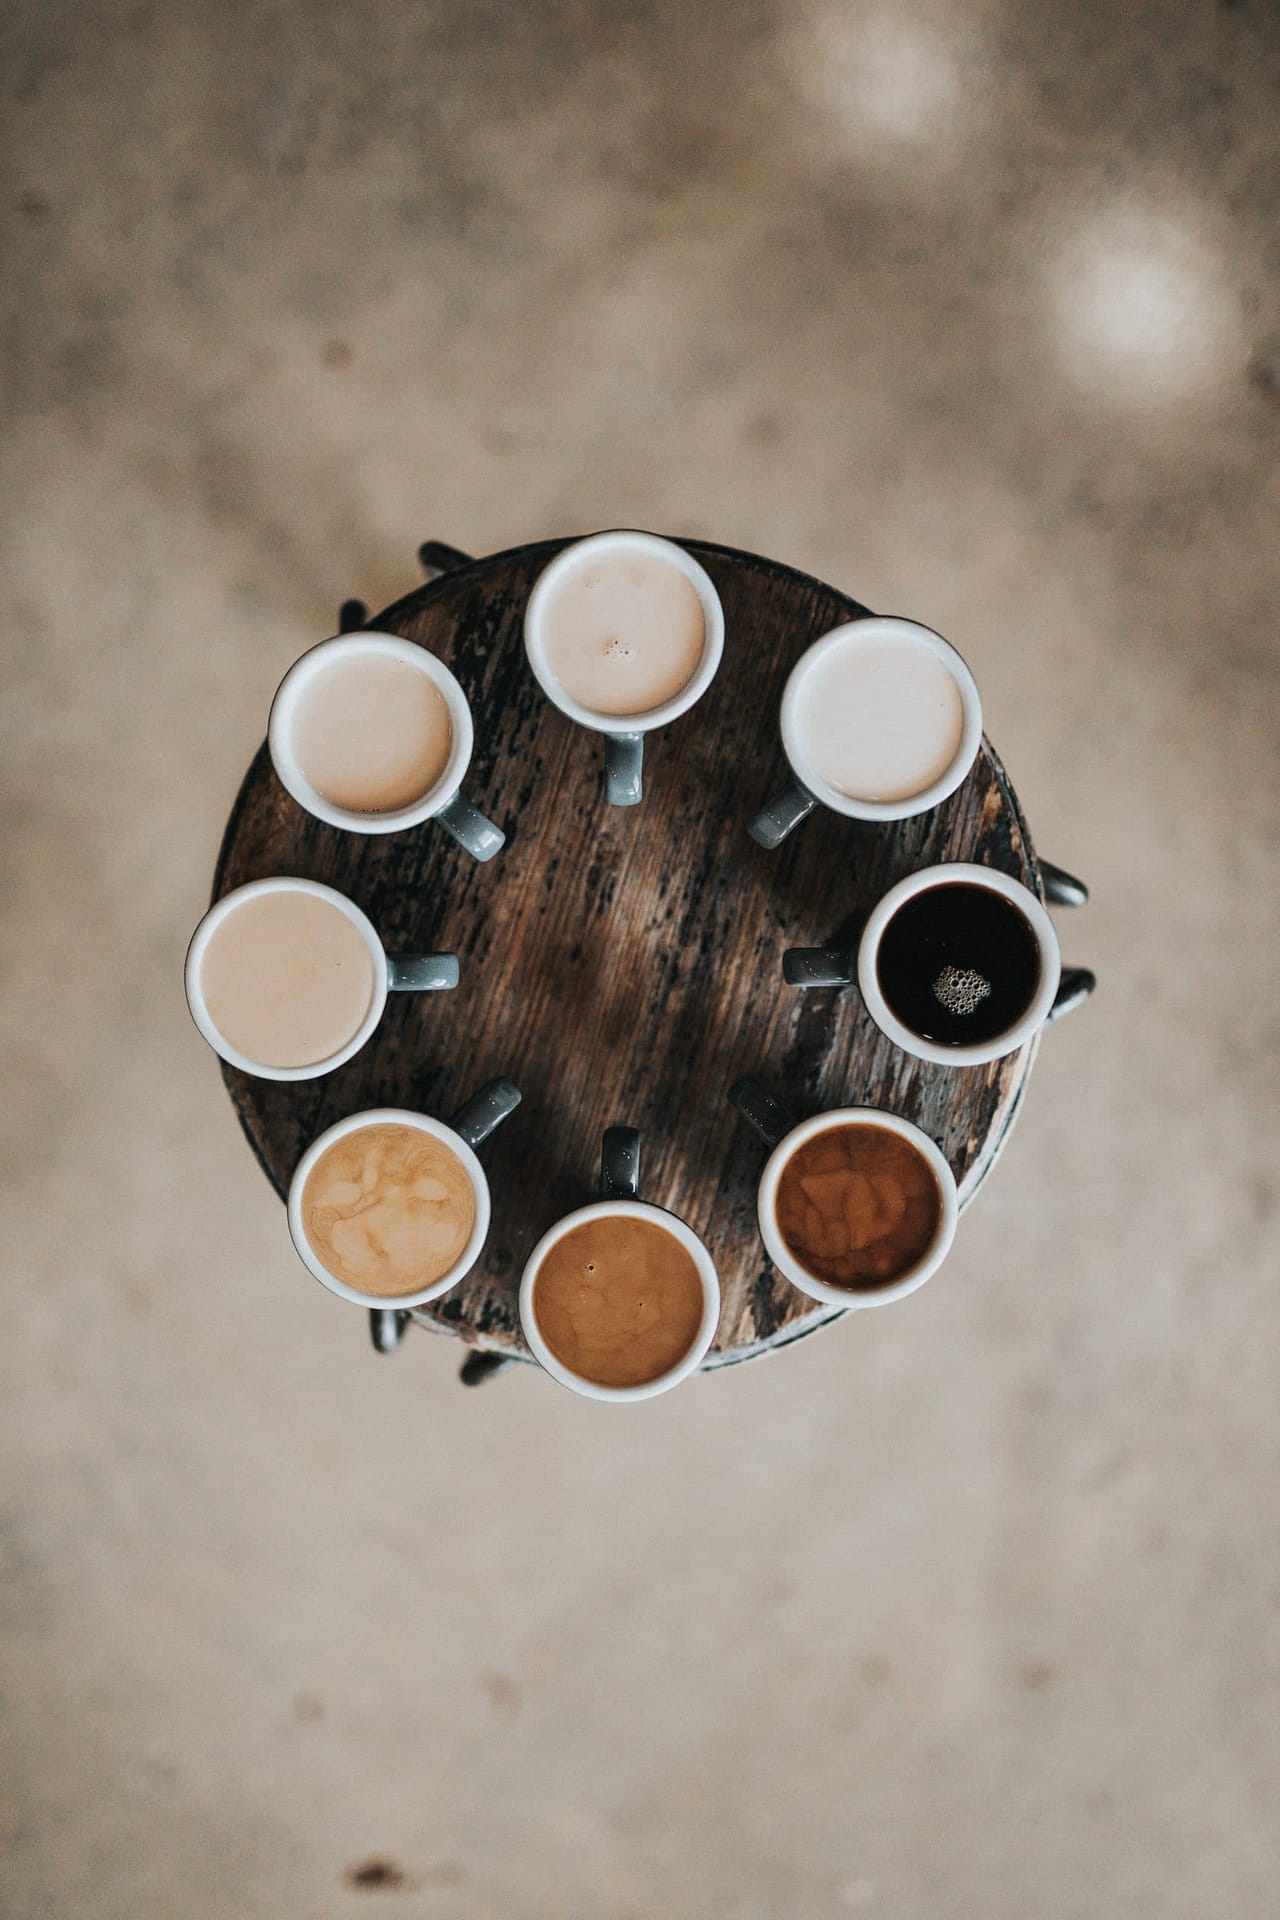 Kaffeeflecken